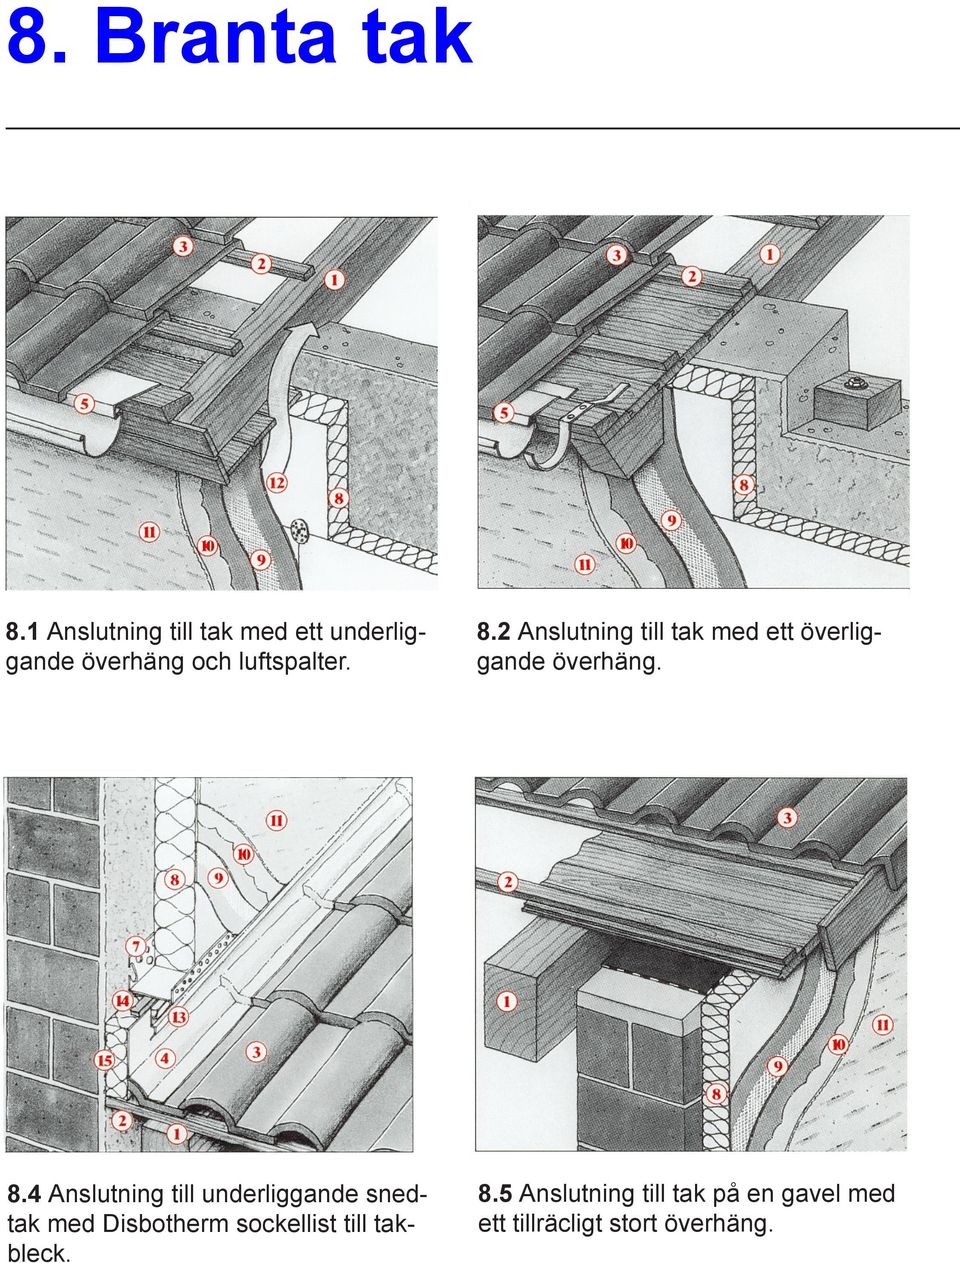 2 Anslutning till tak med ett överliggande överhäng. 8.